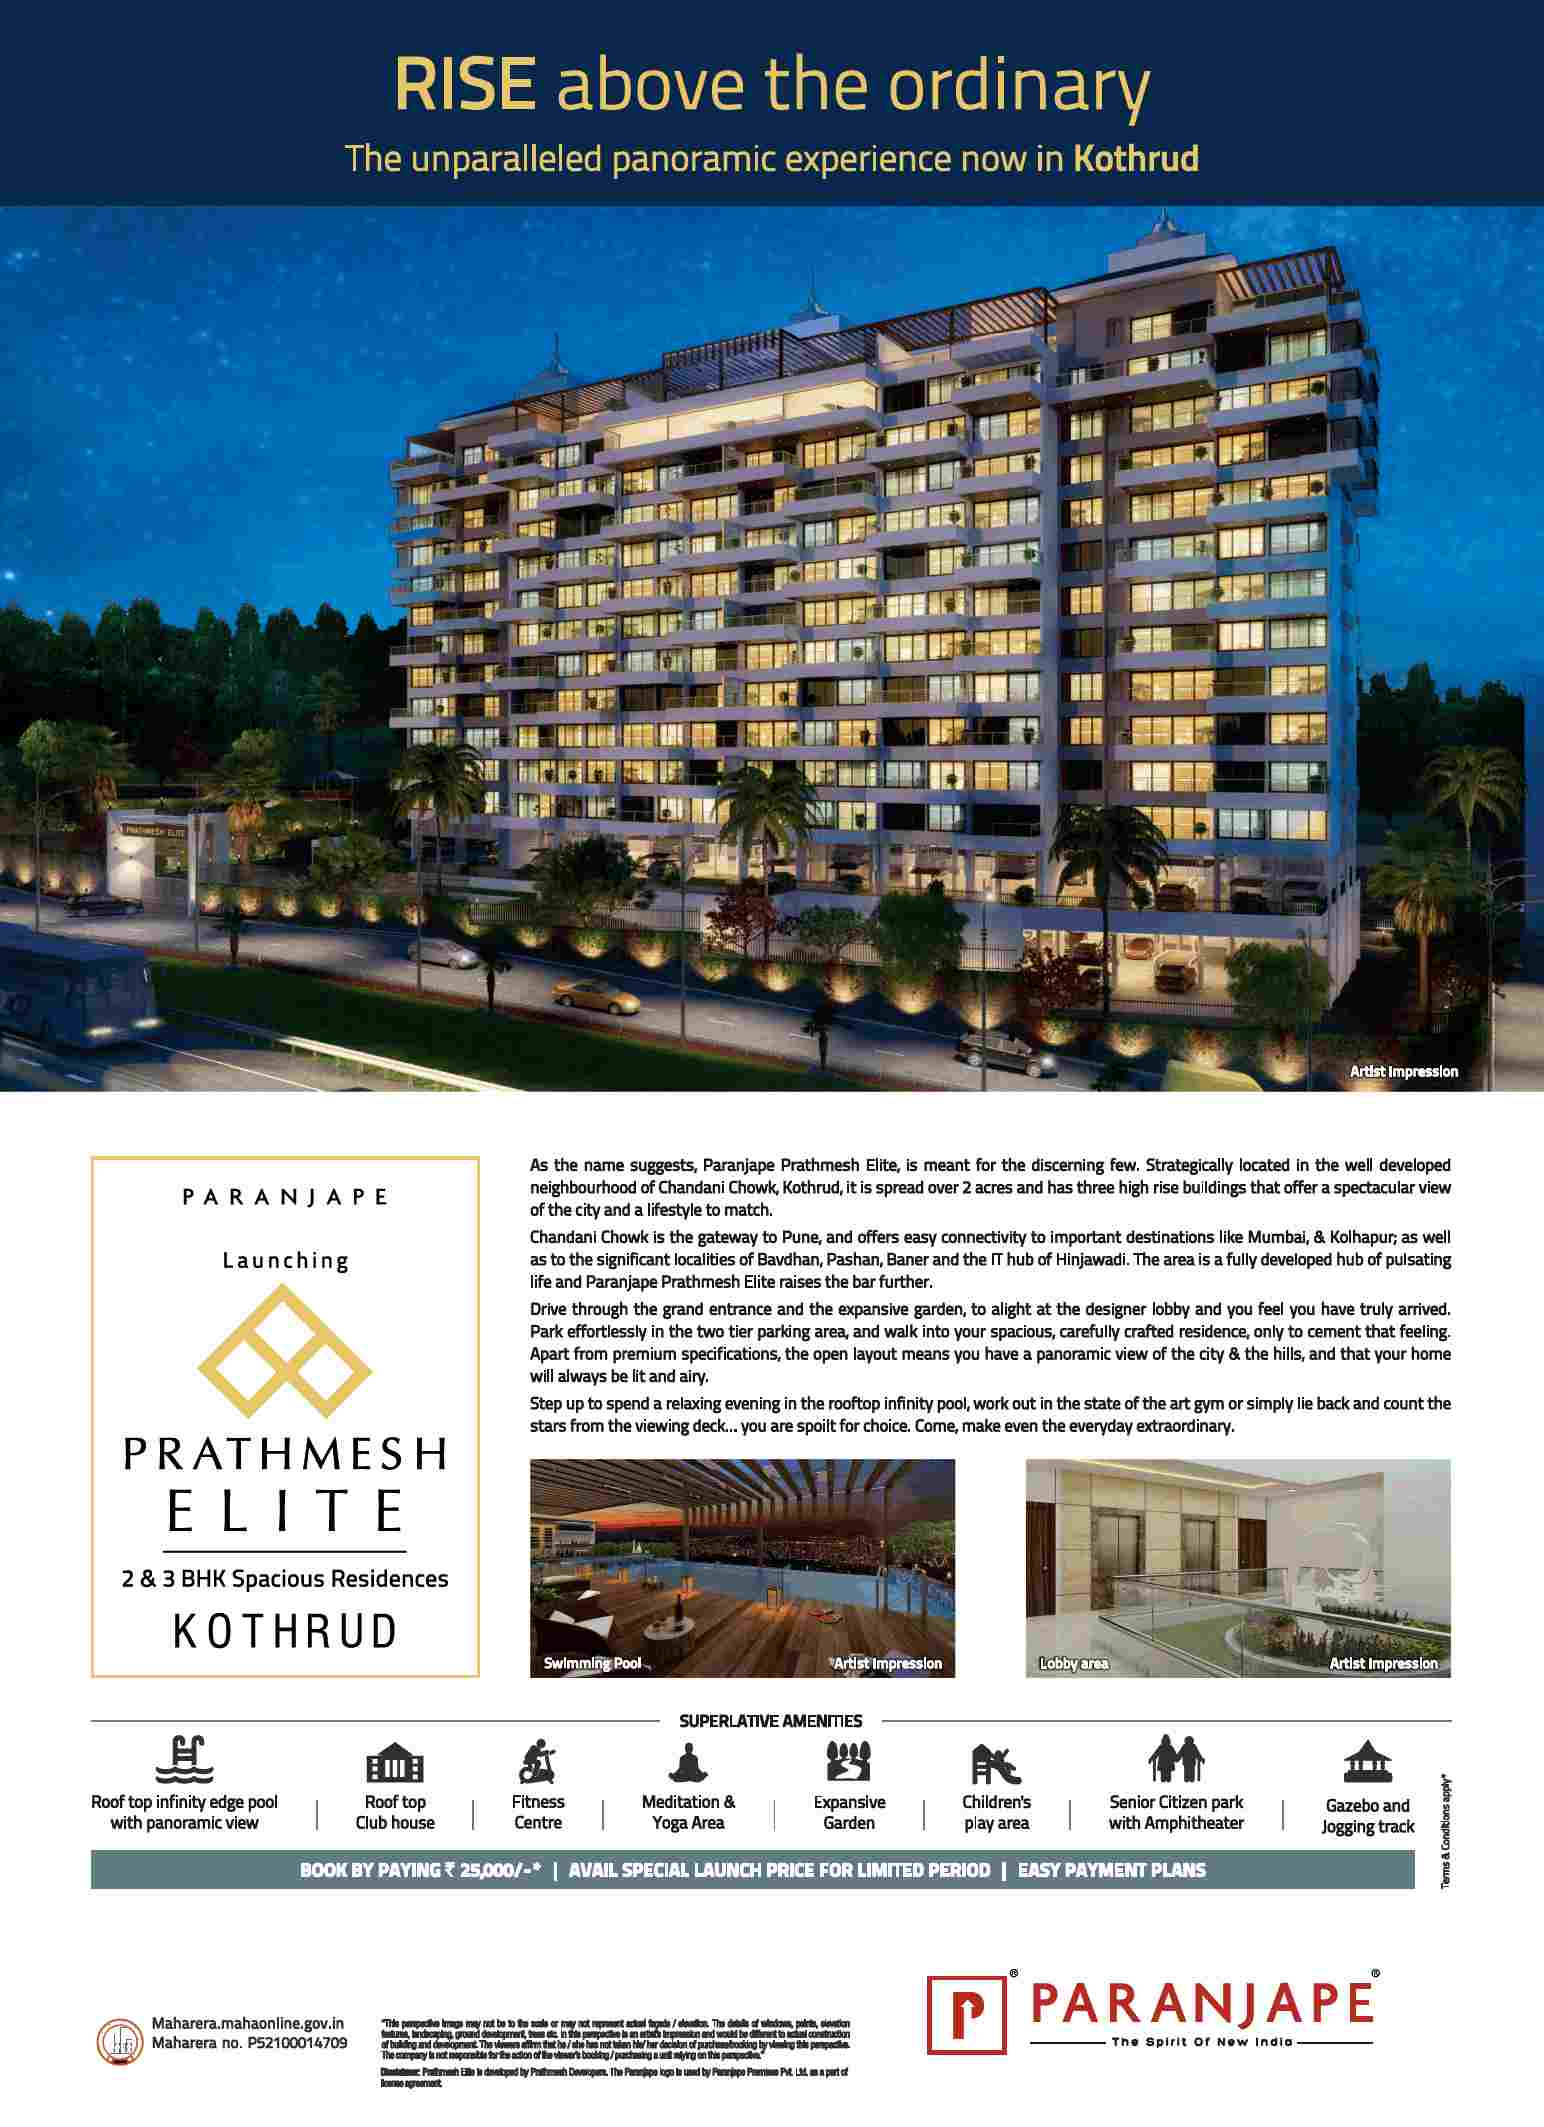 Launching Paranjape Prathmesh Elite in Kothrud, Pune Update